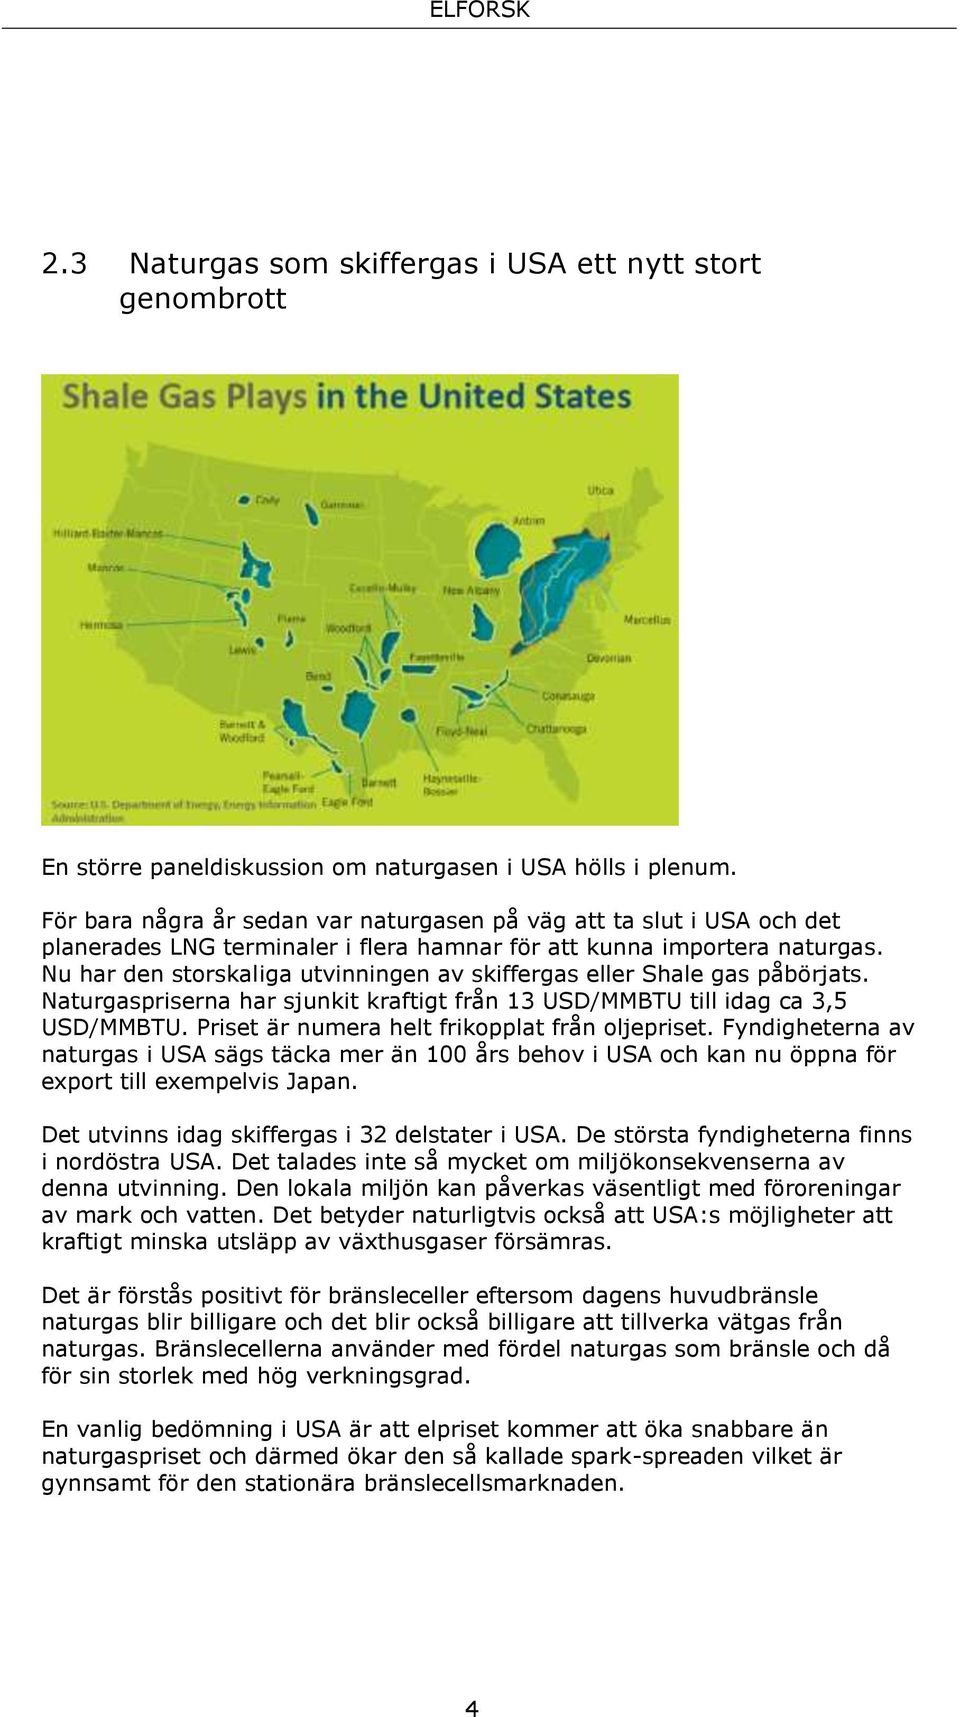 Nu har den storskaliga utvinningen av skiffergas eller Shale gas påbörjats. Naturgaspriserna har sjunkit kraftigt från 13 USD/MMBTU till idag ca 3,5 USD/MMBTU.